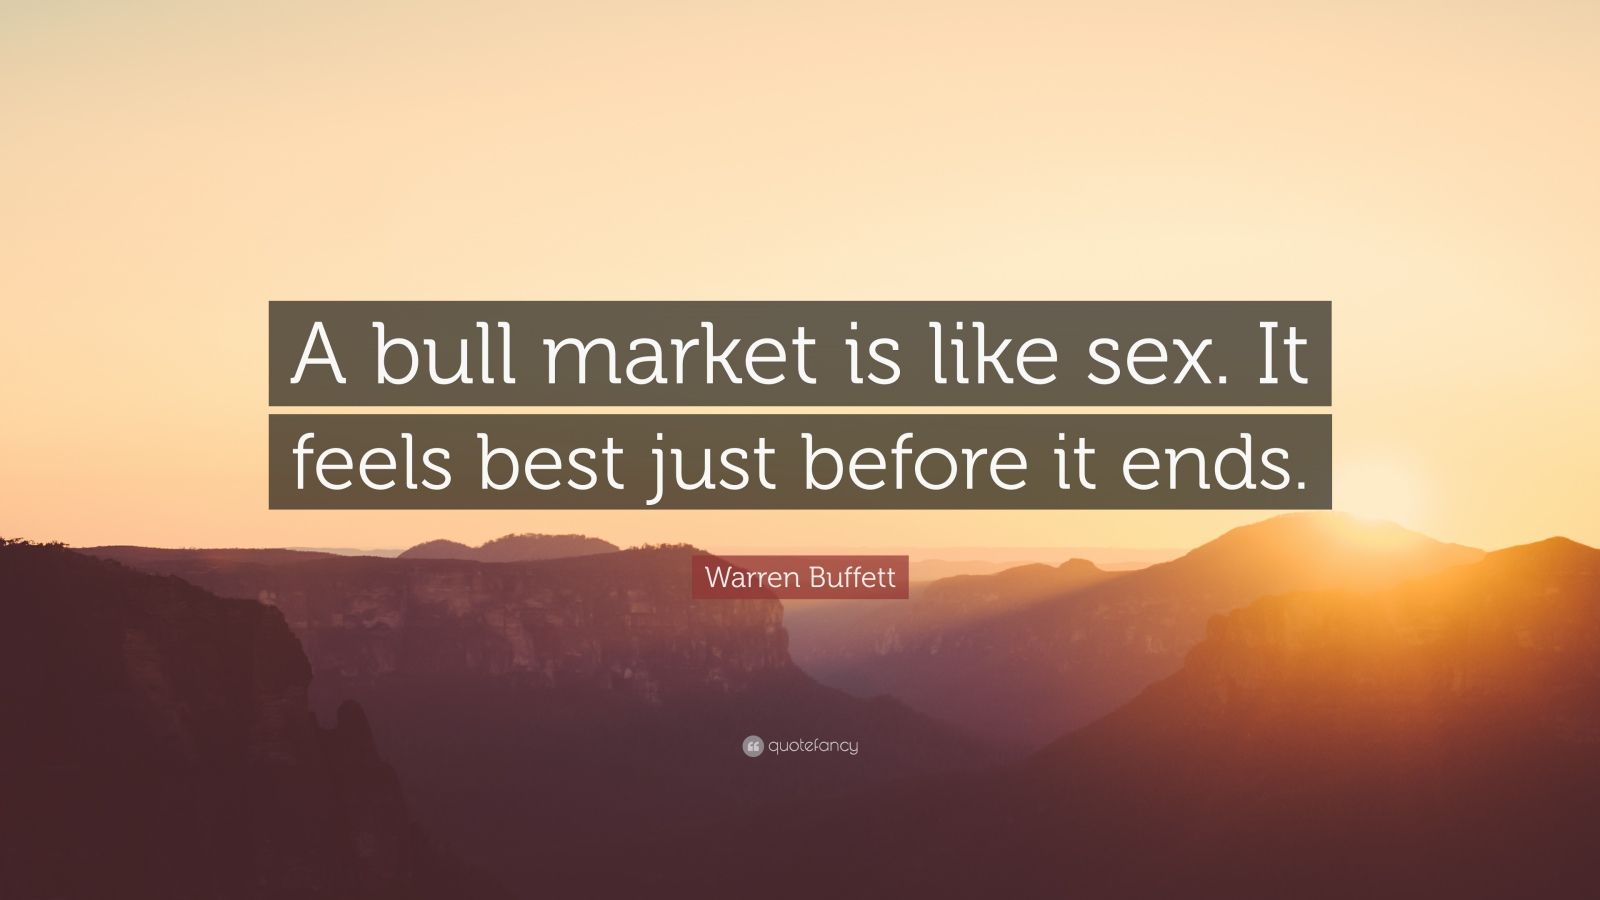 Warren Buffett Quote “a Bull Market Is Like Sex It Feels Best Just Before It Ends”